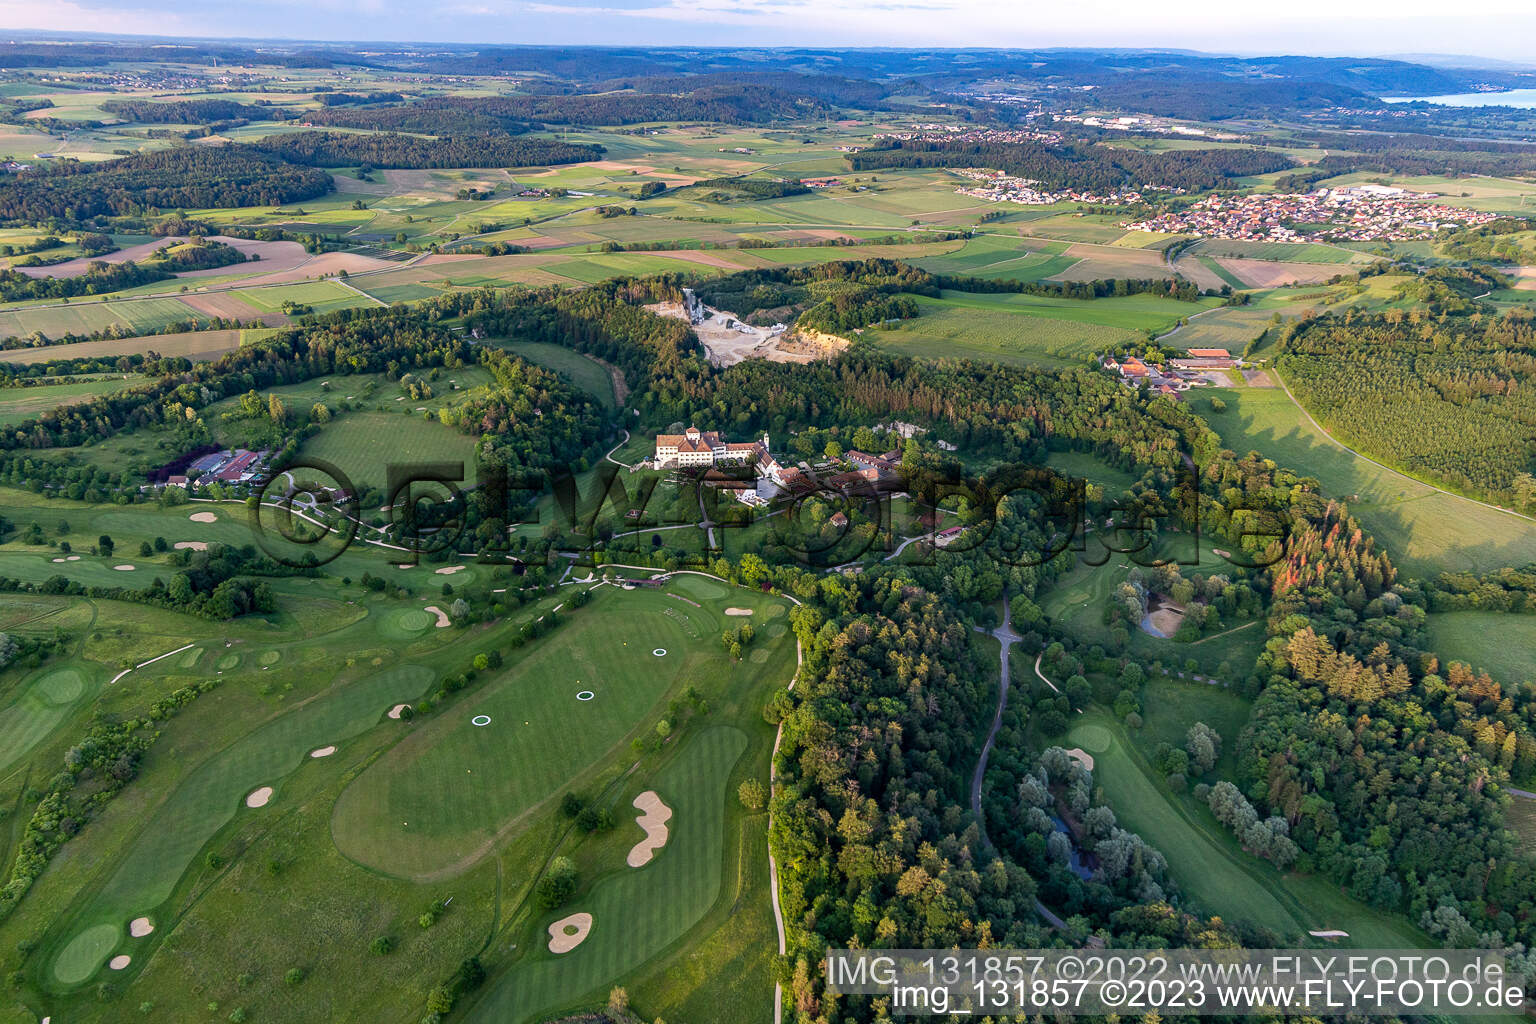 Der Country Club Schloss Langenstein - Der Golfplatz am Bodensee in Orsingen-Nenzingen im Bundesland Baden-Württemberg, Deutschland von der Drohne aus gesehen